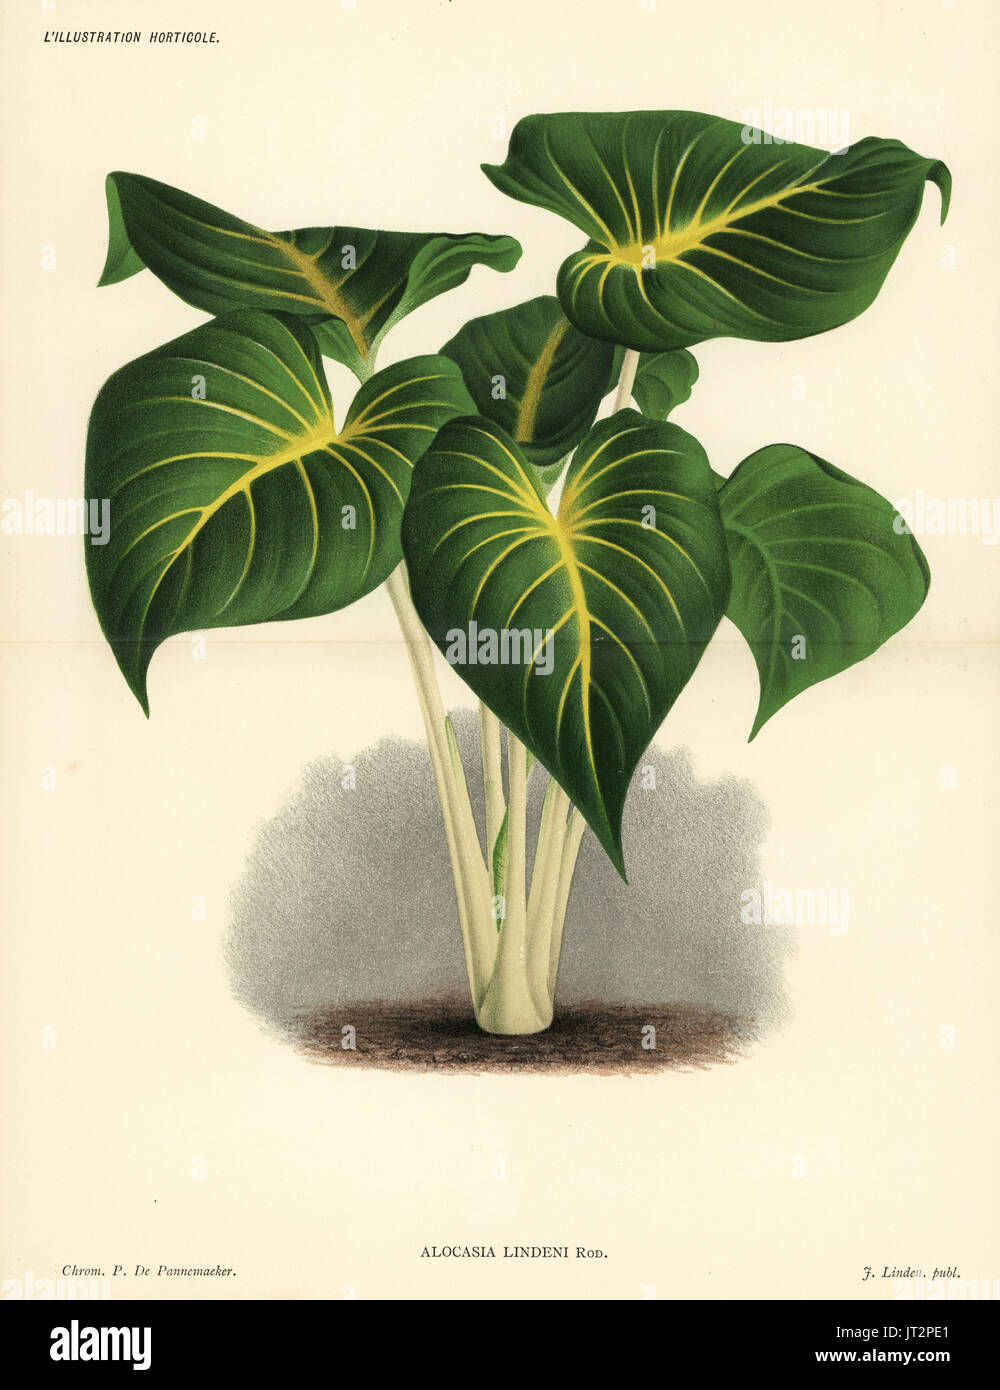 Homalomena Lindenii (Alocasia Lindeni). Farblitho von Pieter de Pannemaeker von Jean Linden l ' Illustration Horticole, Brüssel, 1885. Stockfoto